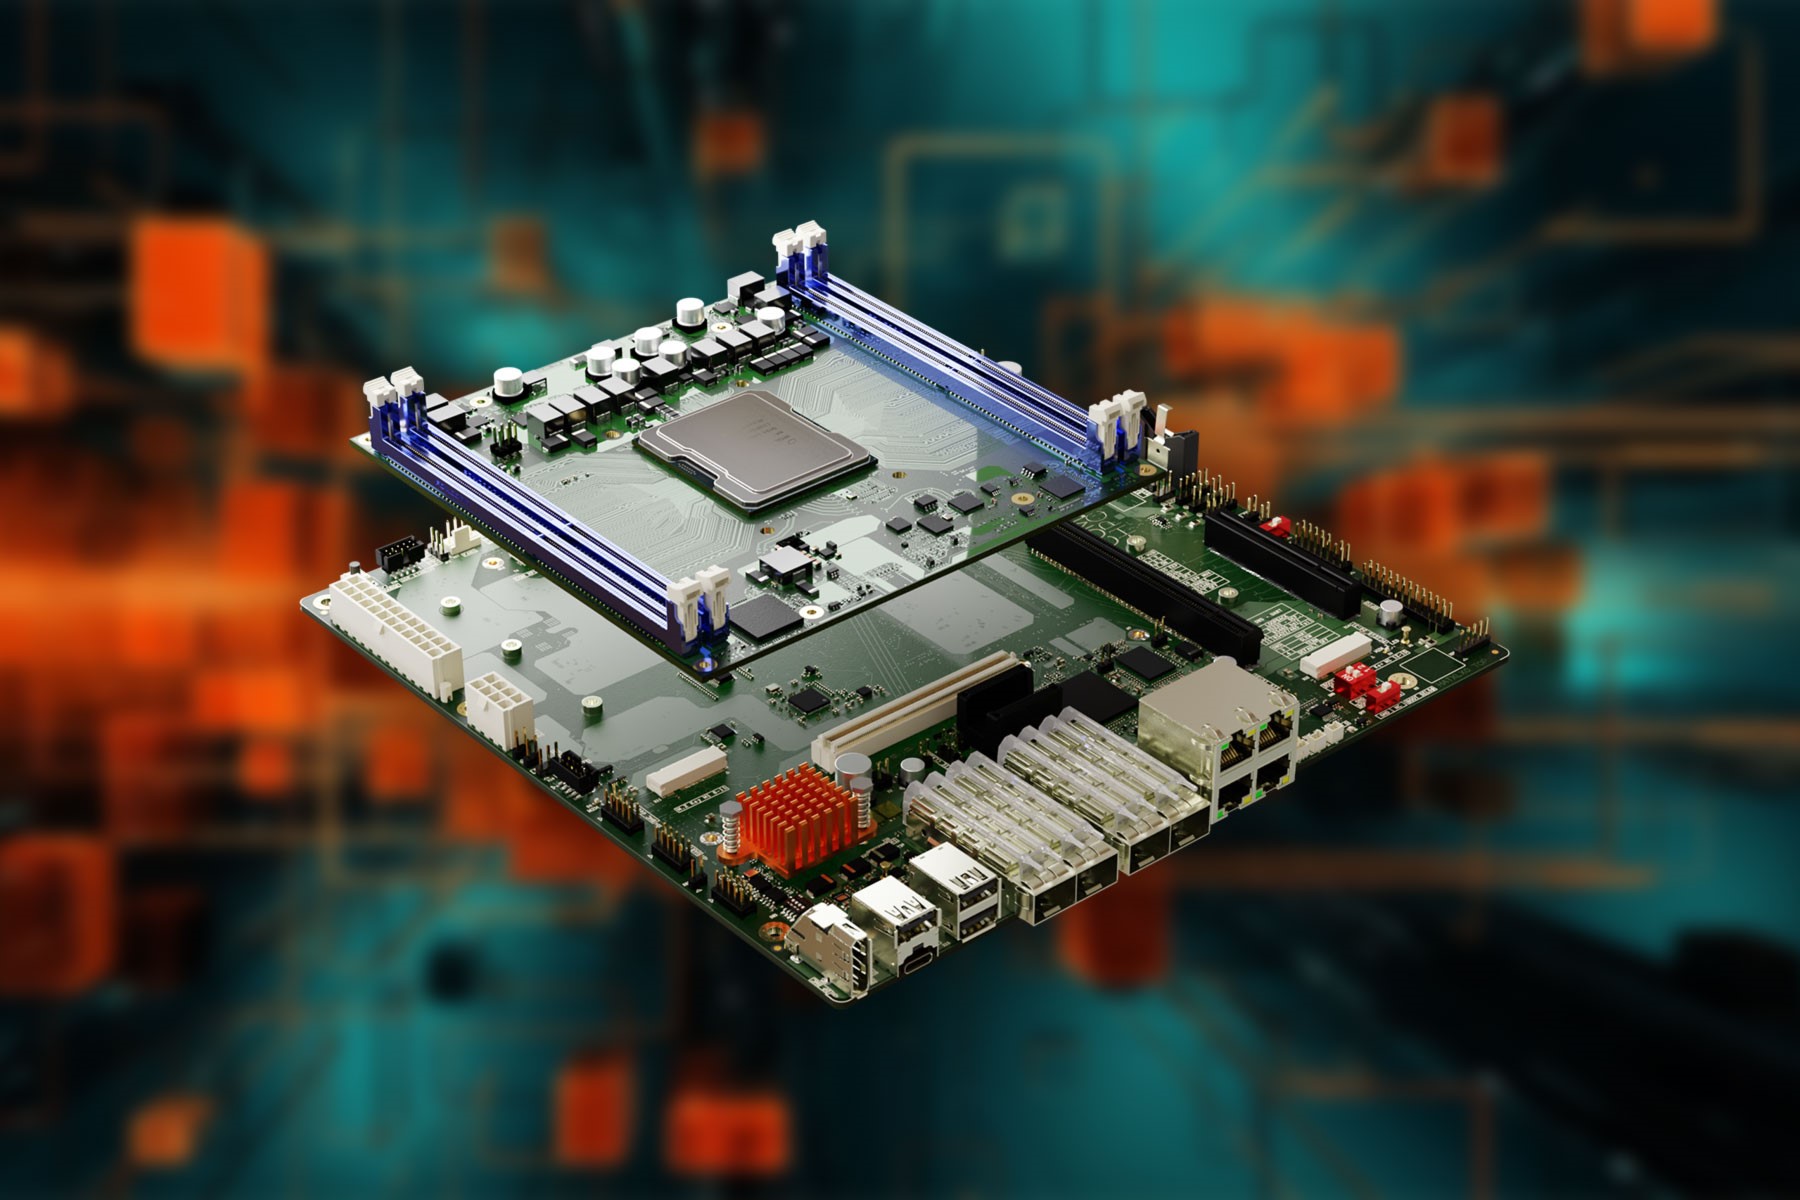 全新 μATX 服務器載板為英特爾 Ice Lake D 處理器系列產品提供更多可擴展性